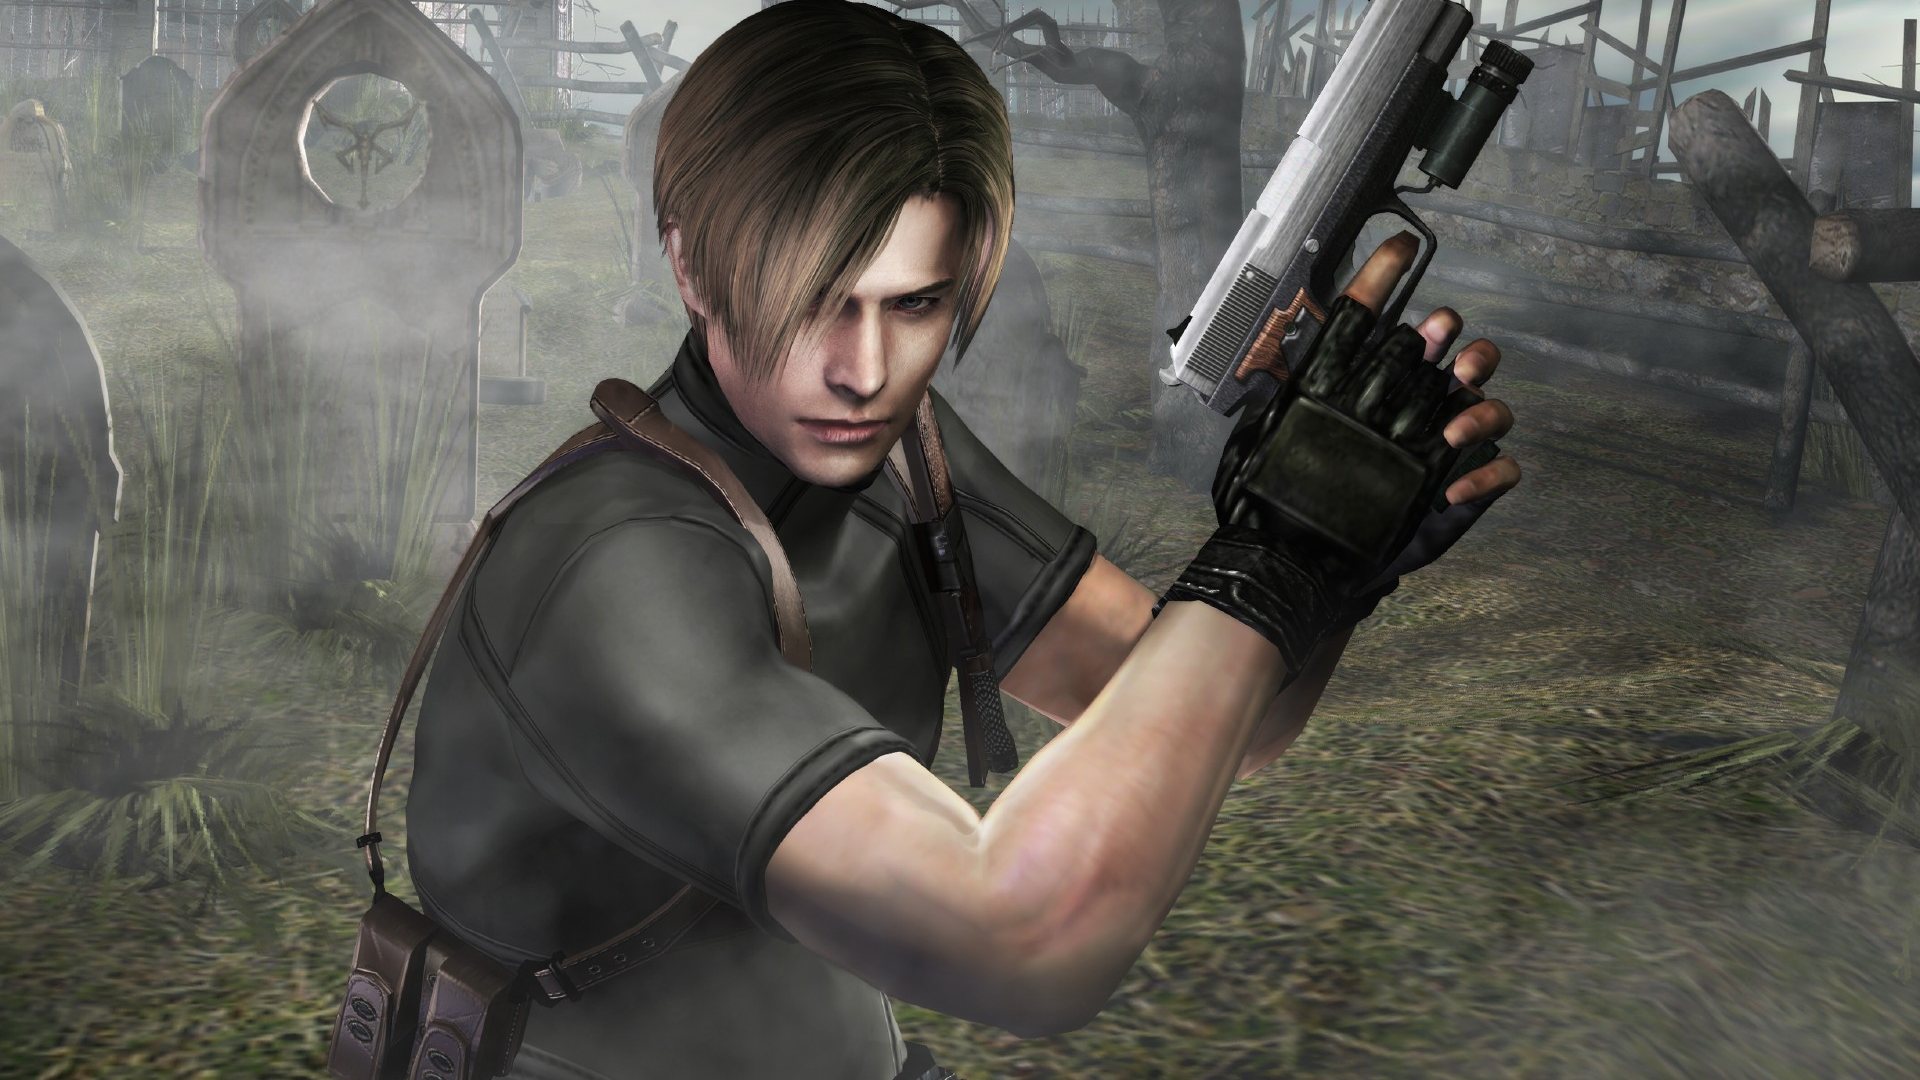 Leon Resident Evil 4 - HD Wallpaper 